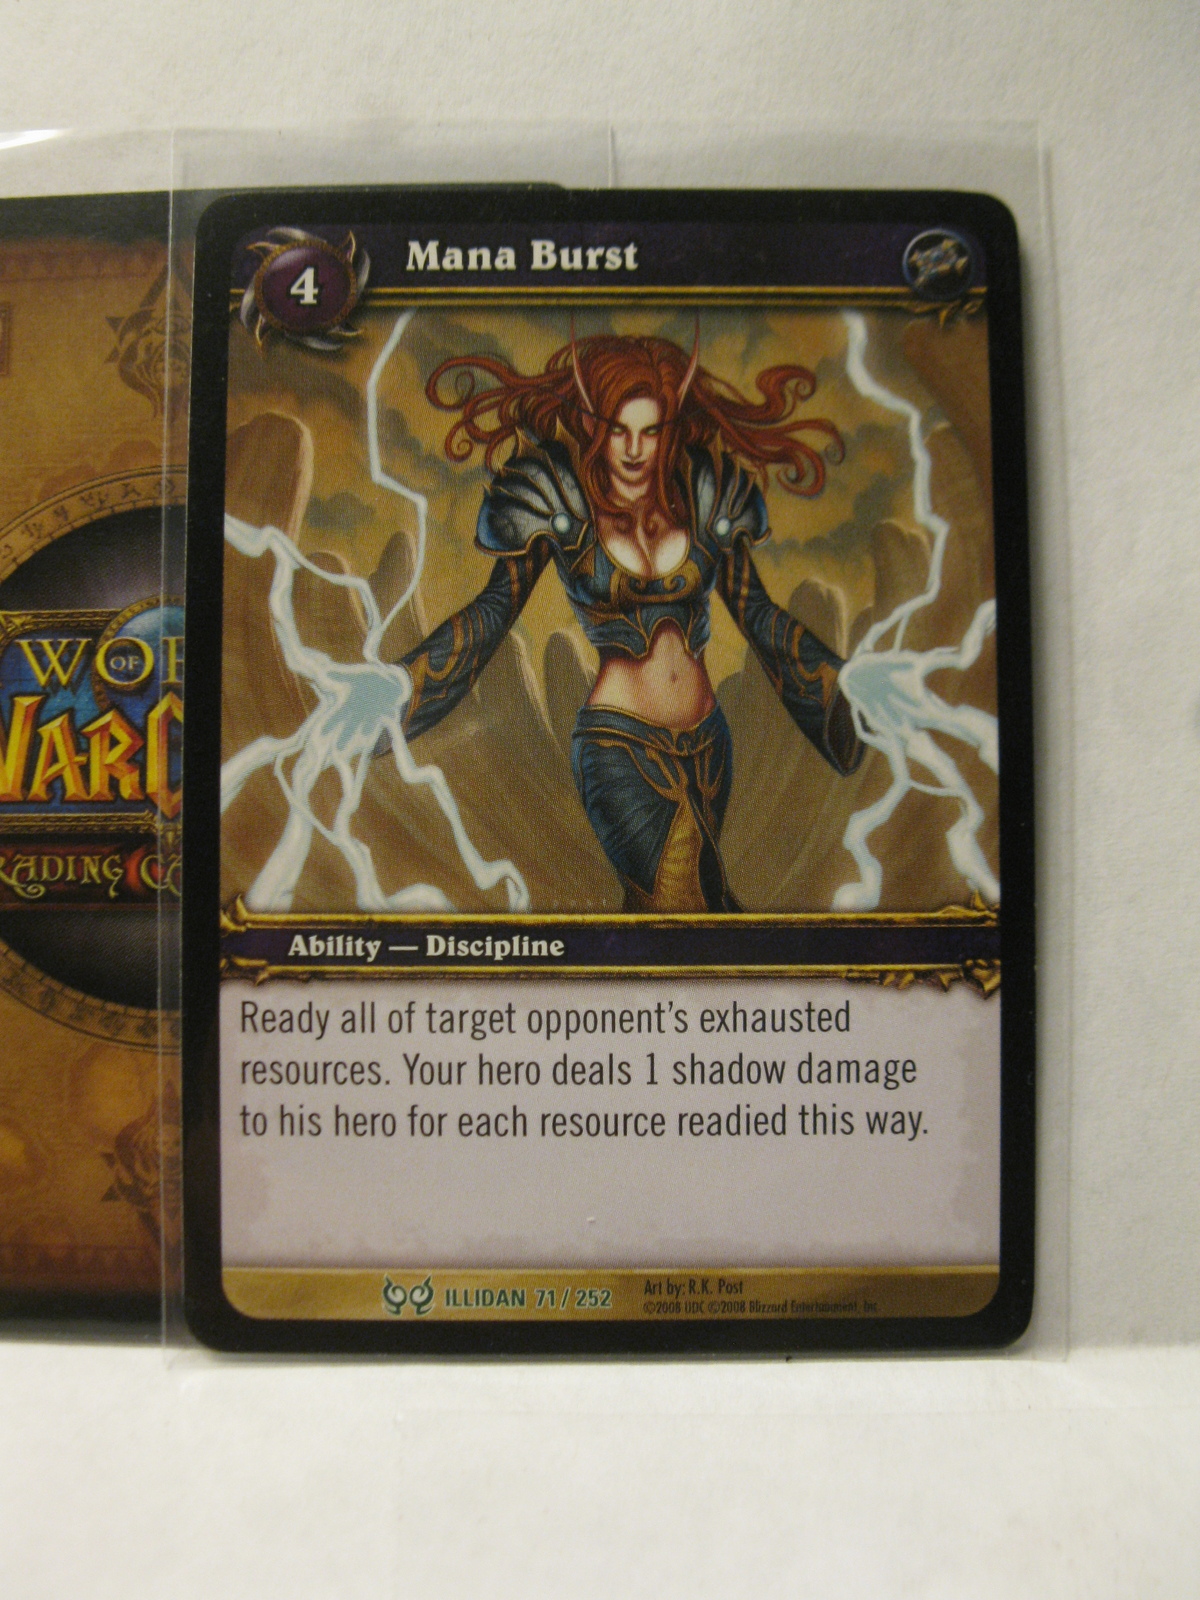 Primary image for (TC-1584) 2008 World of Warcraft Trading Card #71/252: Mana Burst